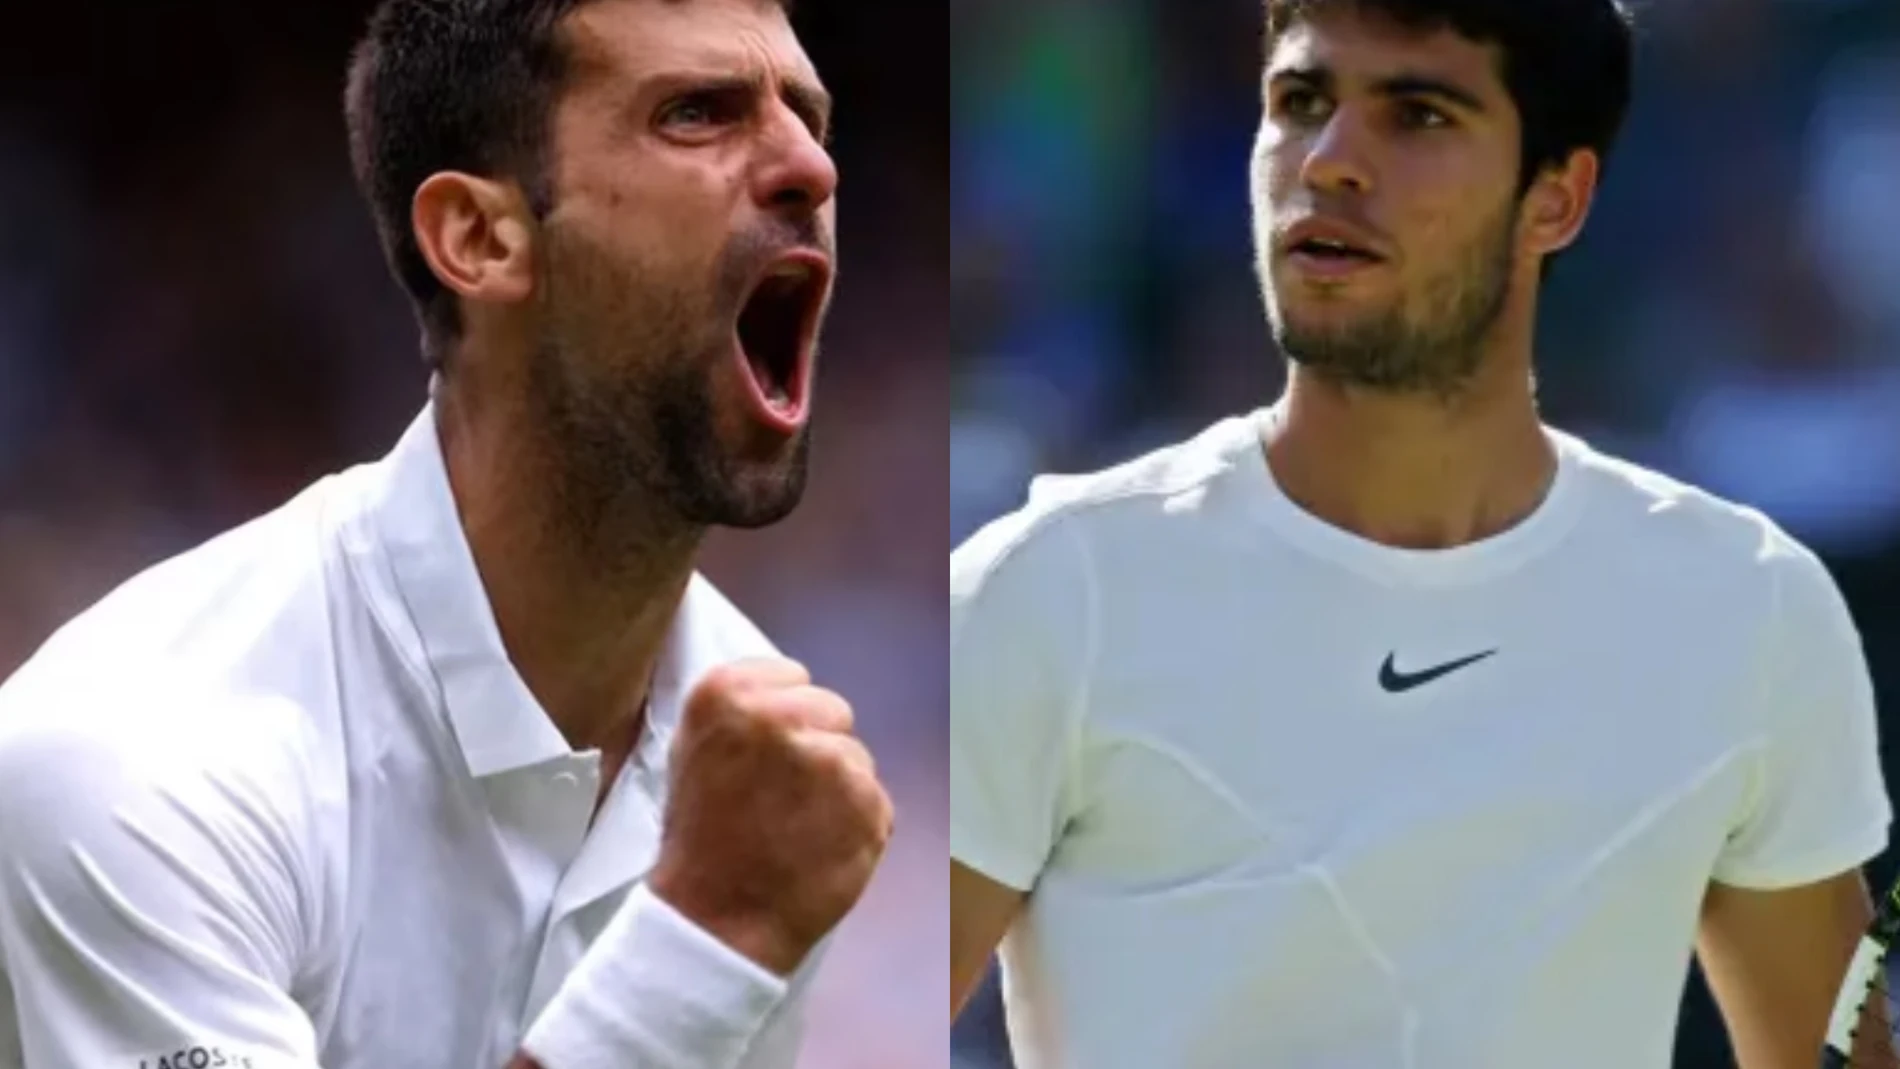 ¿Espionaje en Wimbledon? la acusación contra Alcaraz que enfada a Djokovic: "No estoy tranquilo..."